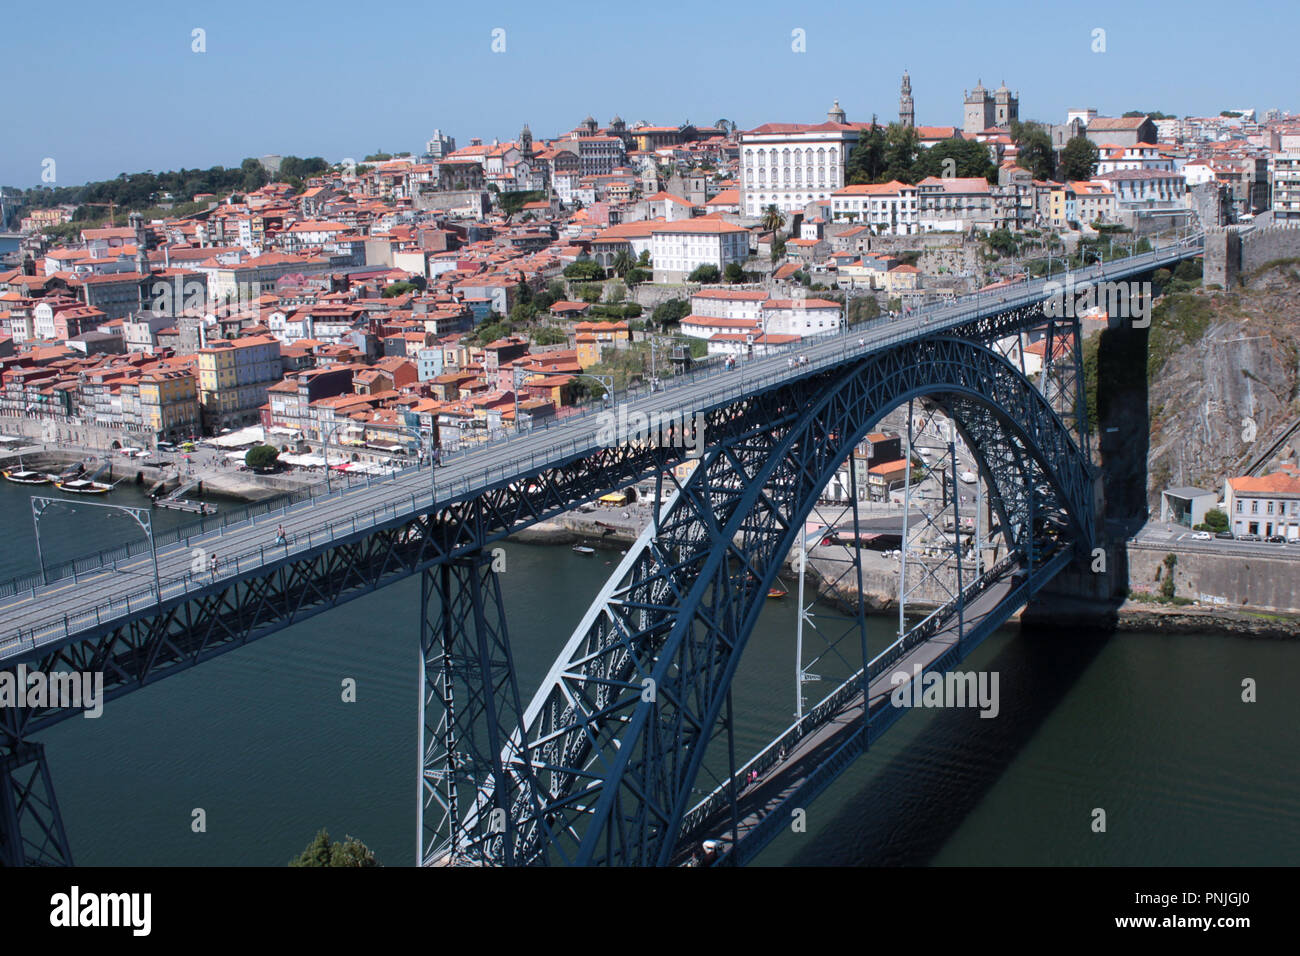 Ponte di ferro in una città medievale. Costruire il ponte dalla società Eiffel nel tardo XIX secolo nella città di Porto, Portogallo. Foto Stock